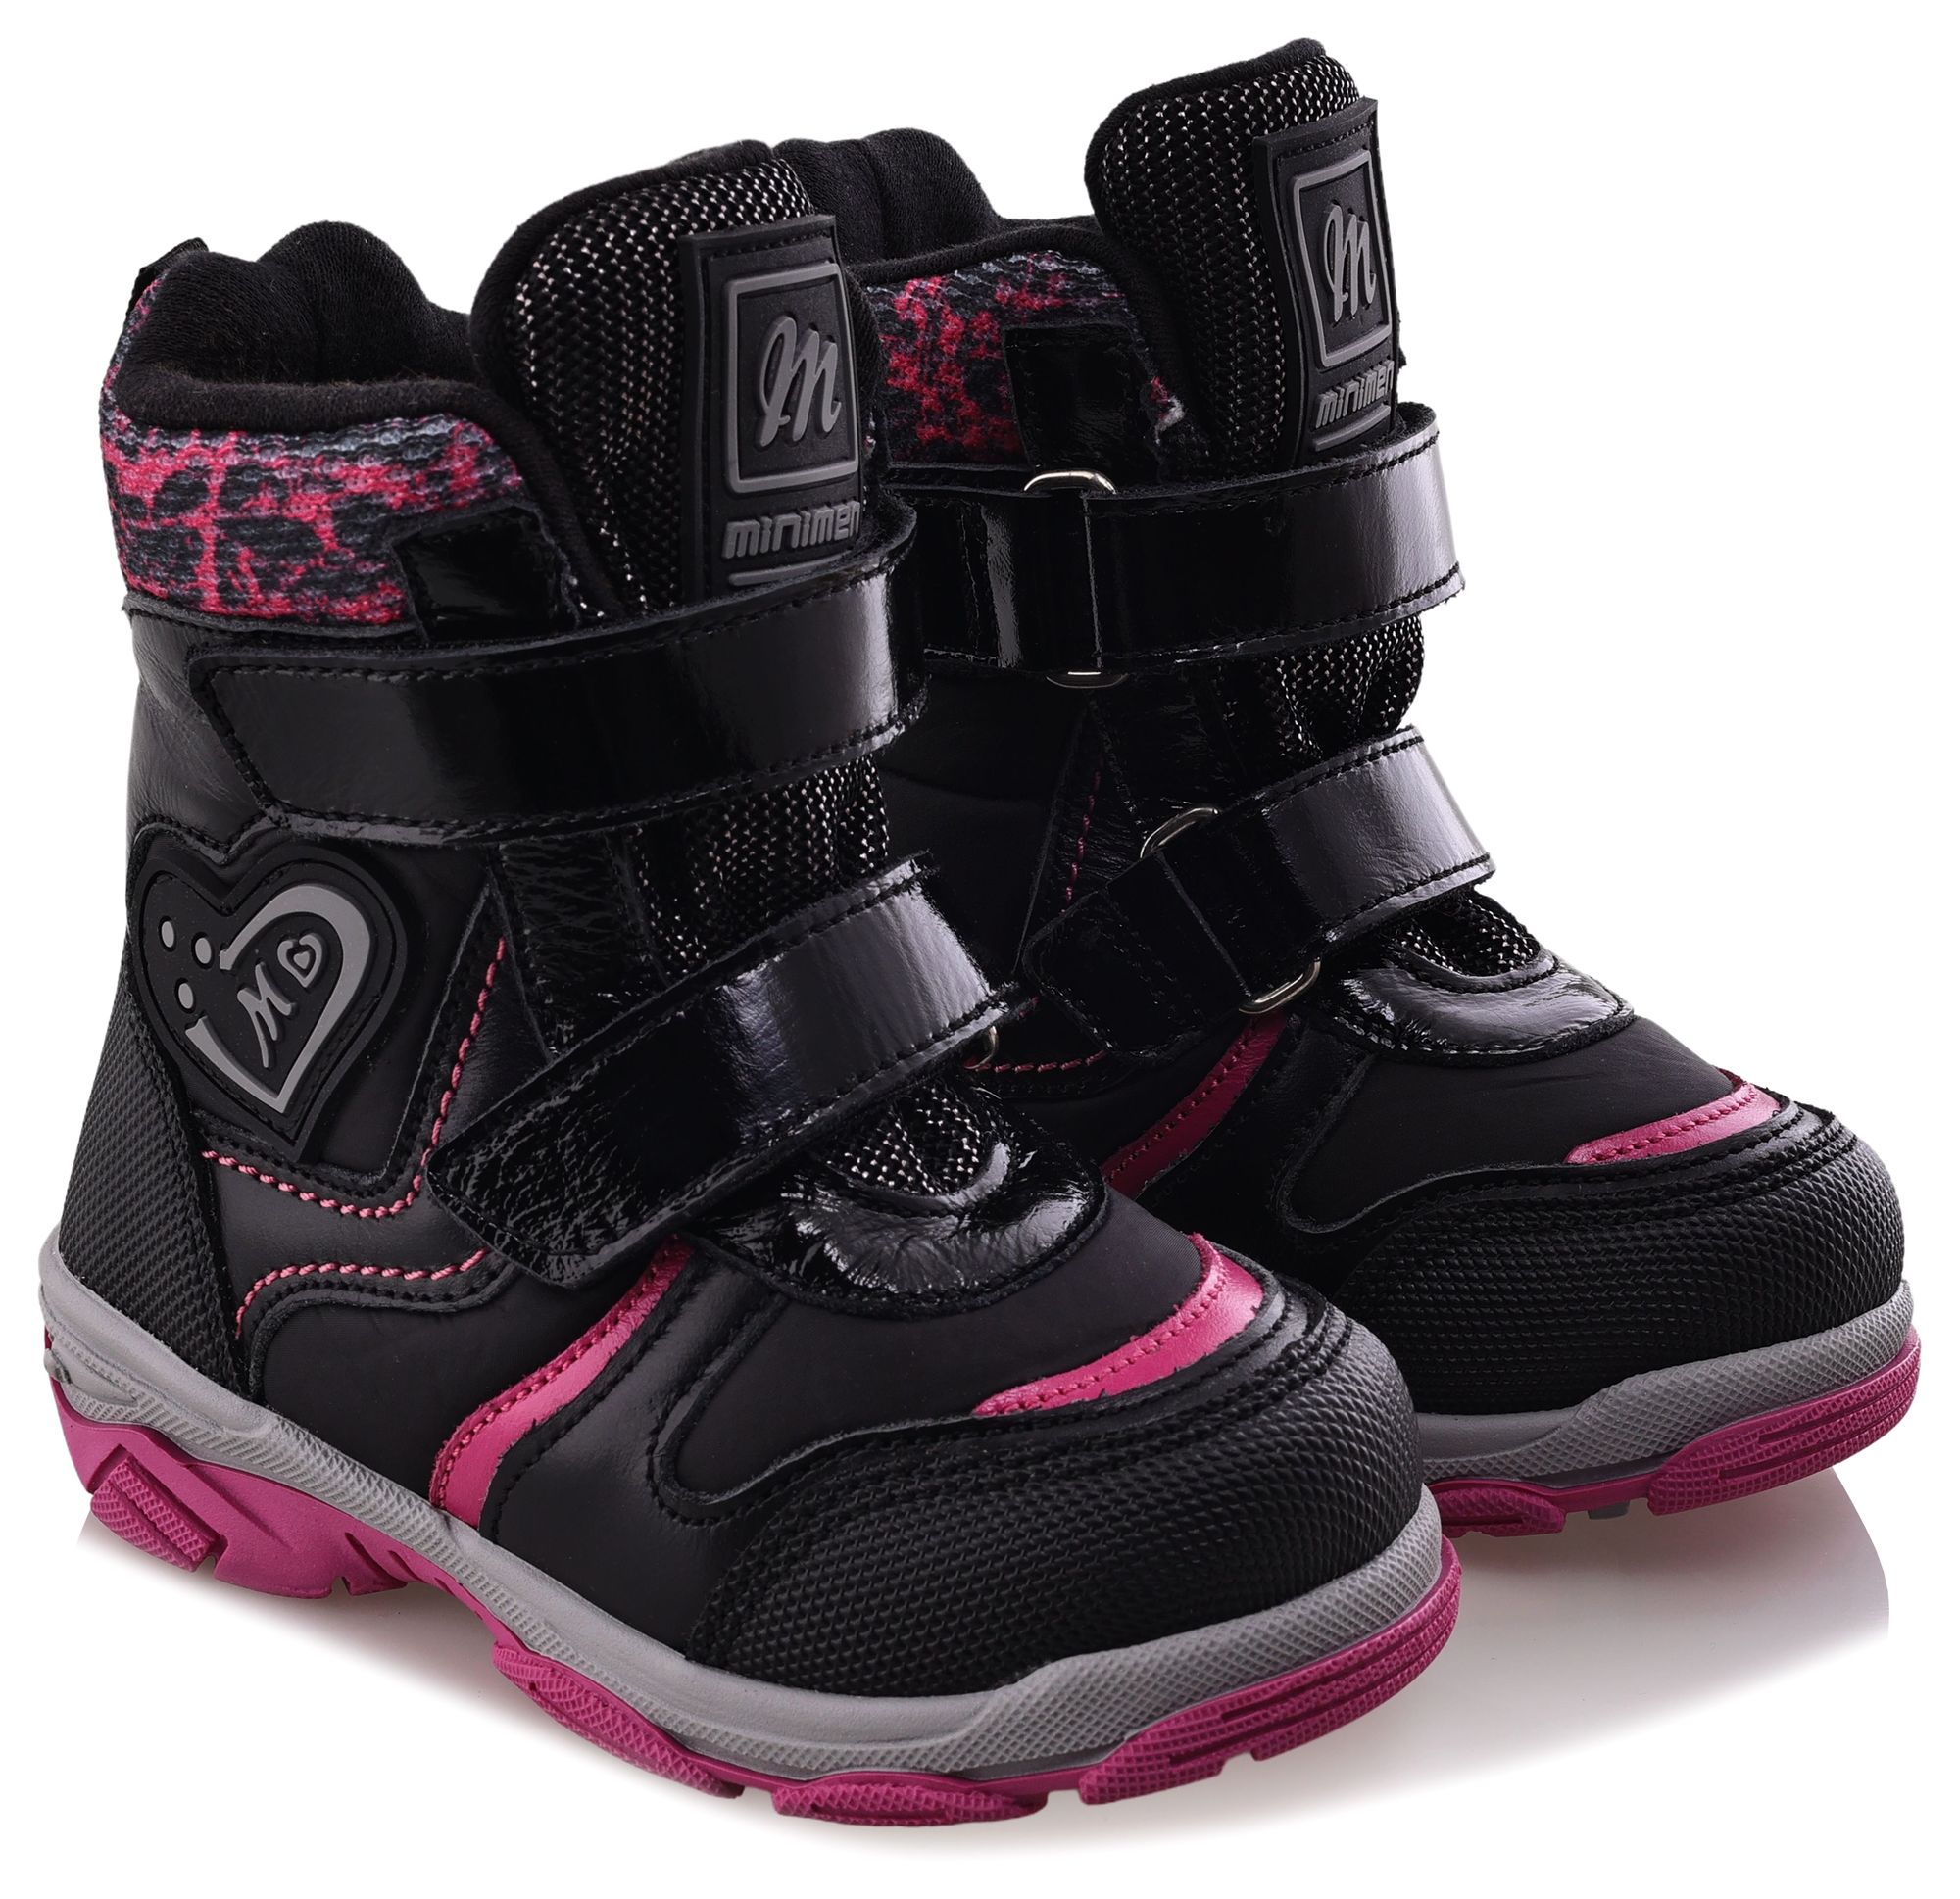 Ботинки Minimen для девочек, чёрные, размер 29, 2656-53-23B-01